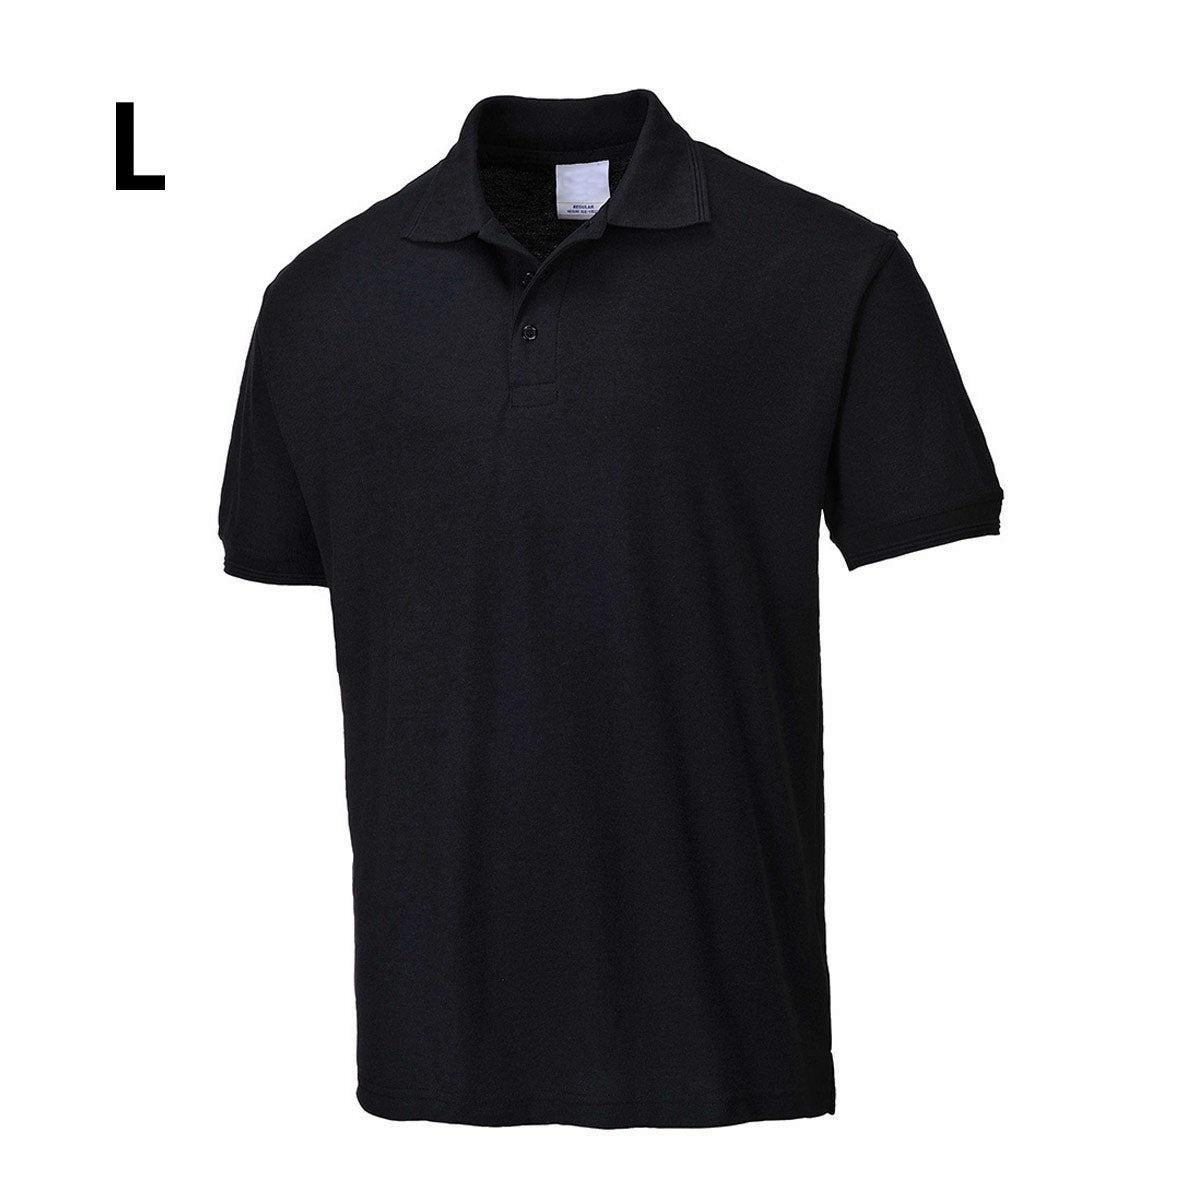 Poloskjorte for menn - Svart - Størrelse: L